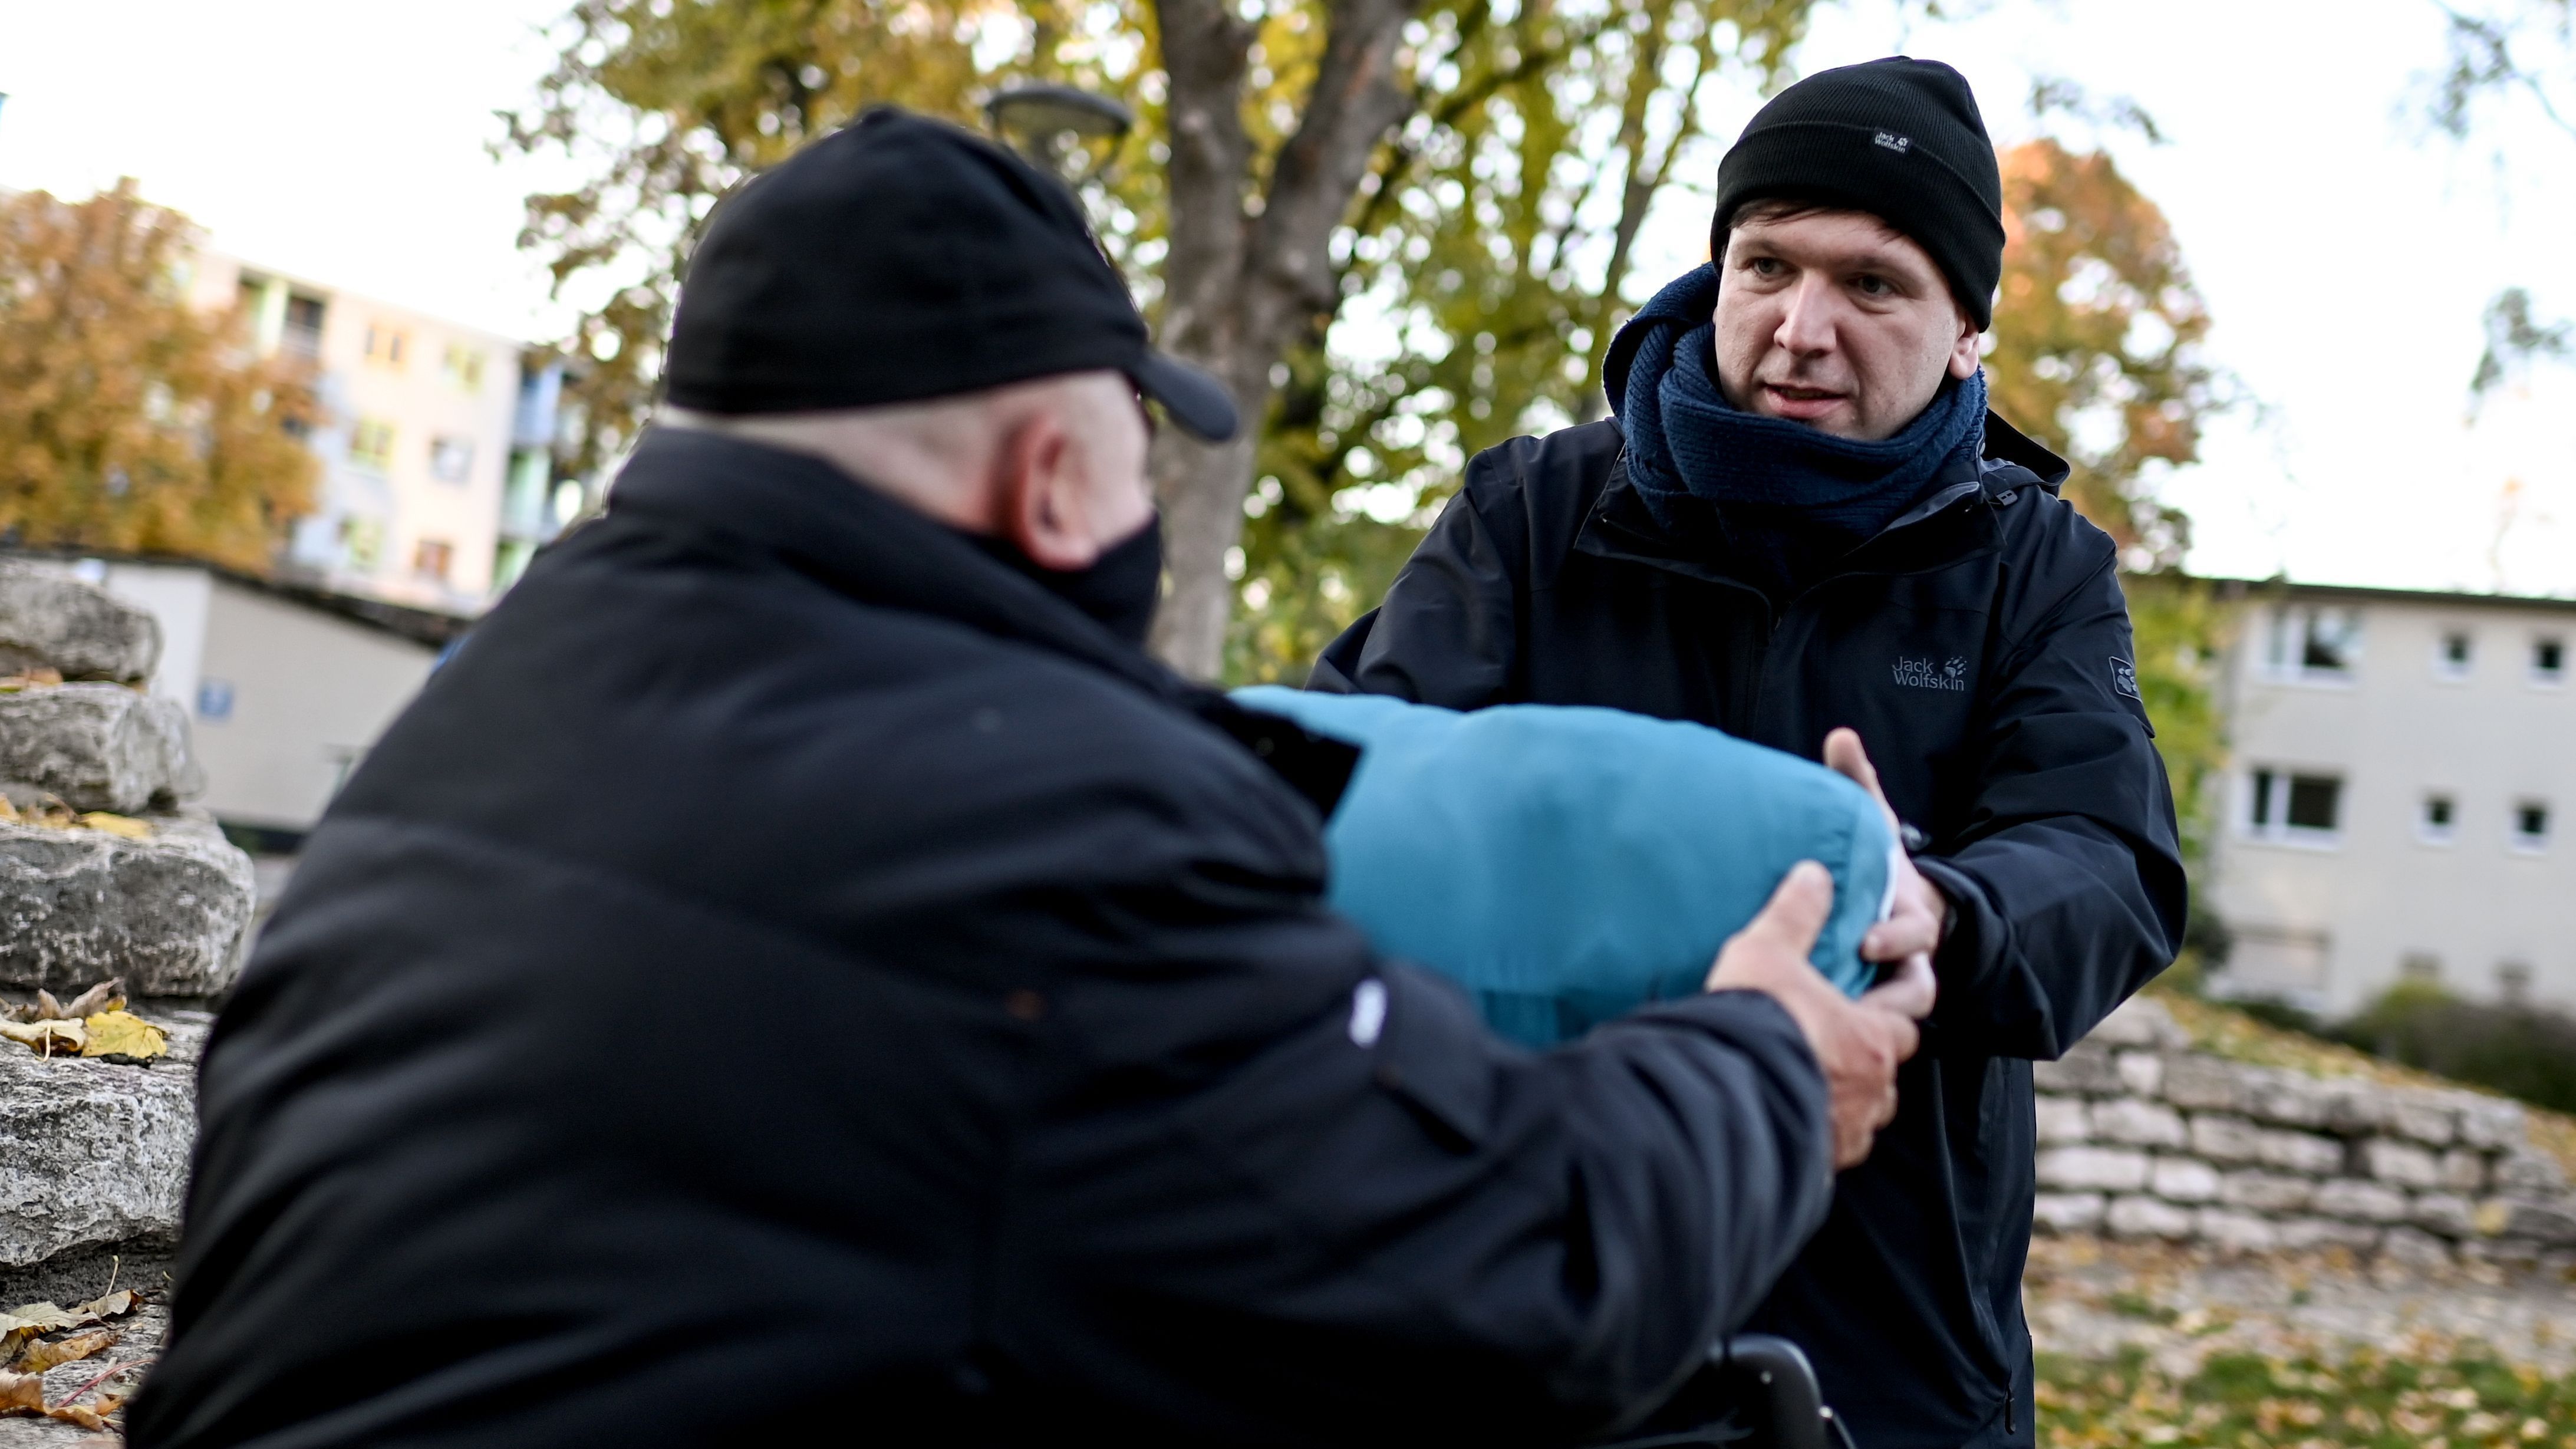 Besonders im Winter sind Obdachlose auf Hilfe angewiesen, um nicht zu erfrieren.